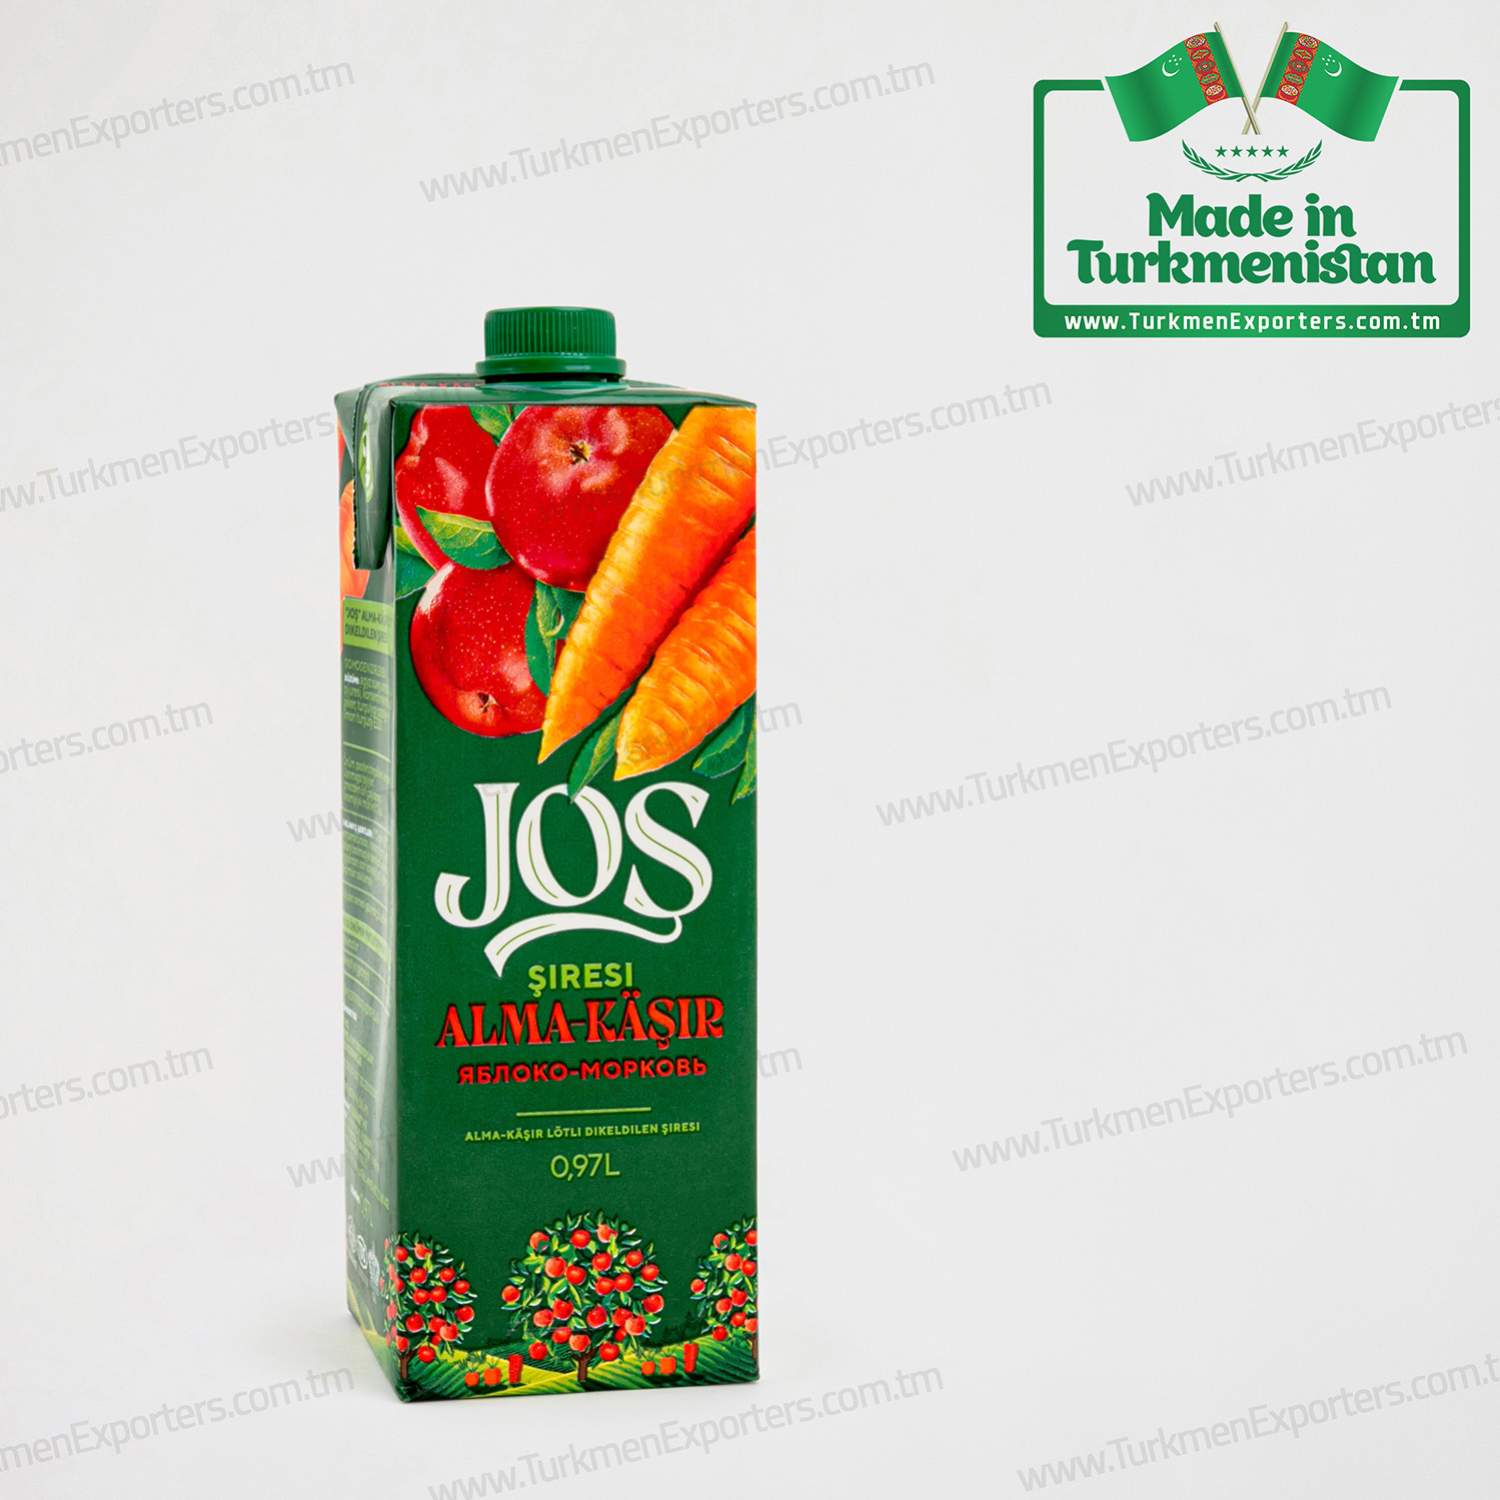 Apple& Carrot fruit juice Josh 0.97 Litre | Parahat individual enterprise